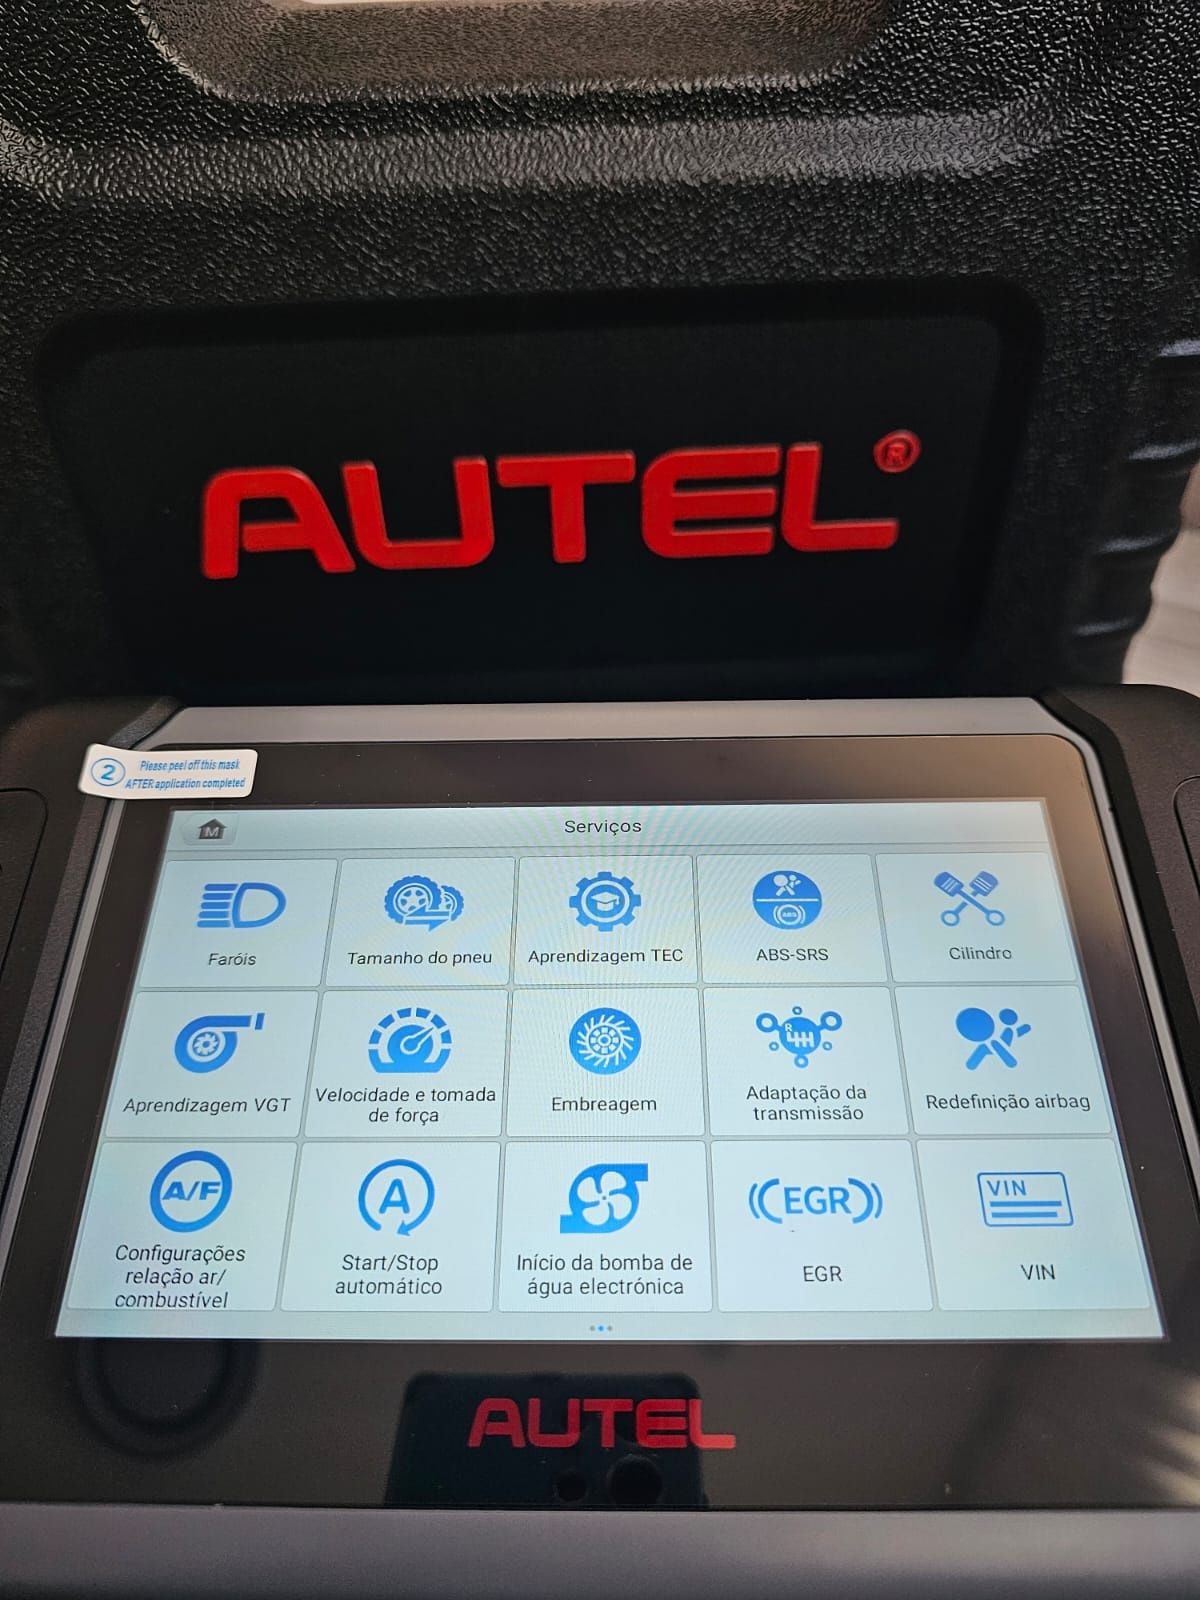 Autel.com Maquina de Diagnóstico Profissional MP808BT PRO KIT ORIGINAL